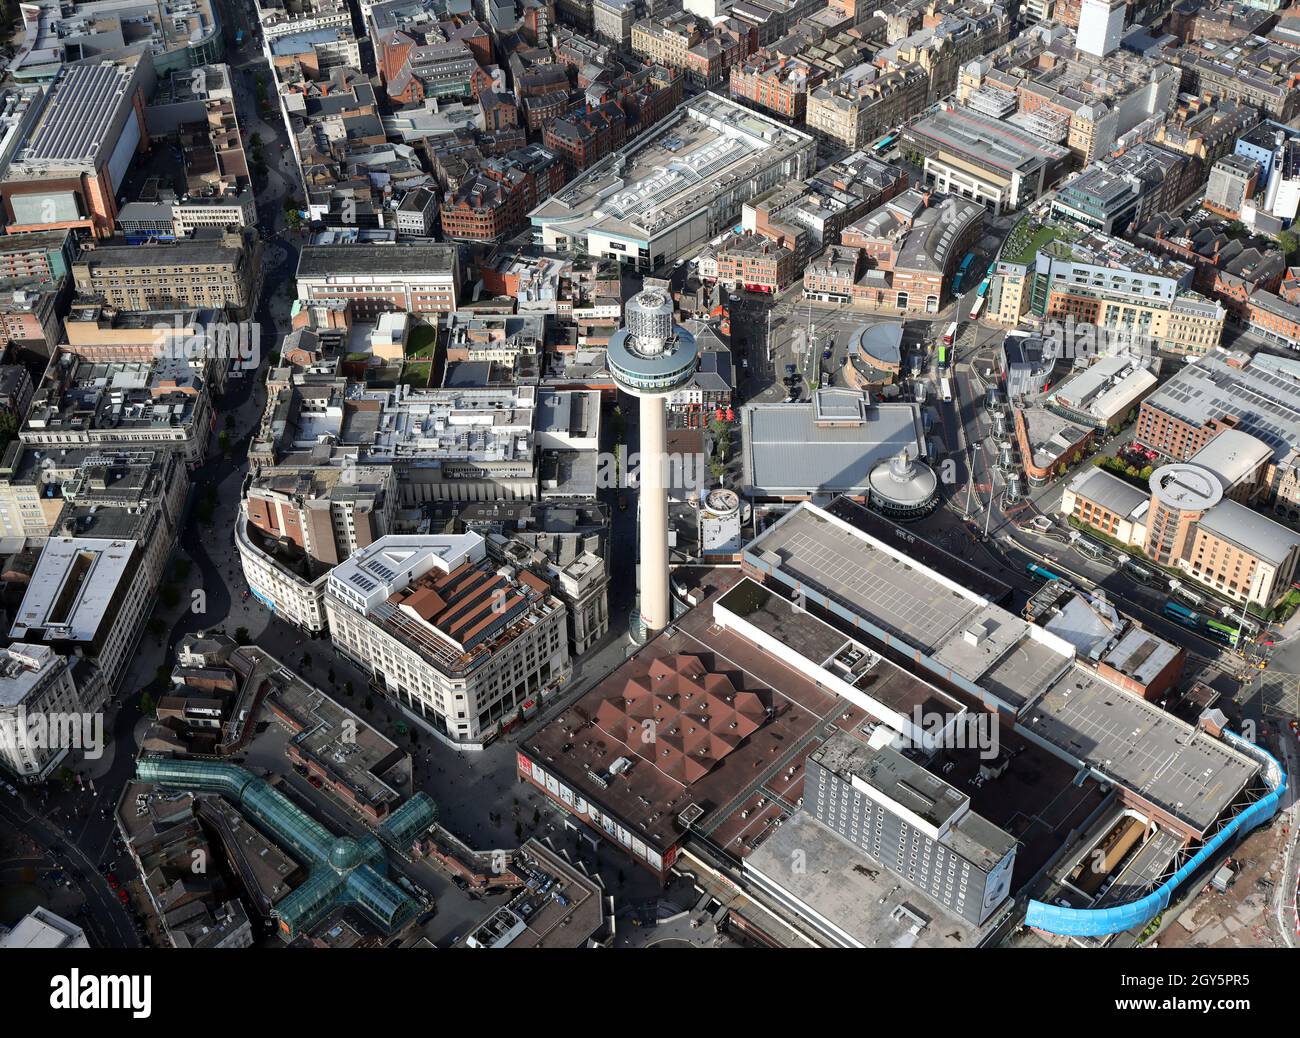 Vue aérienne de Liverpool avec la galerie d'observation des balises St Johns (radio City Tower) et le centre commercial St Johns en avant-plan Banque D'Images